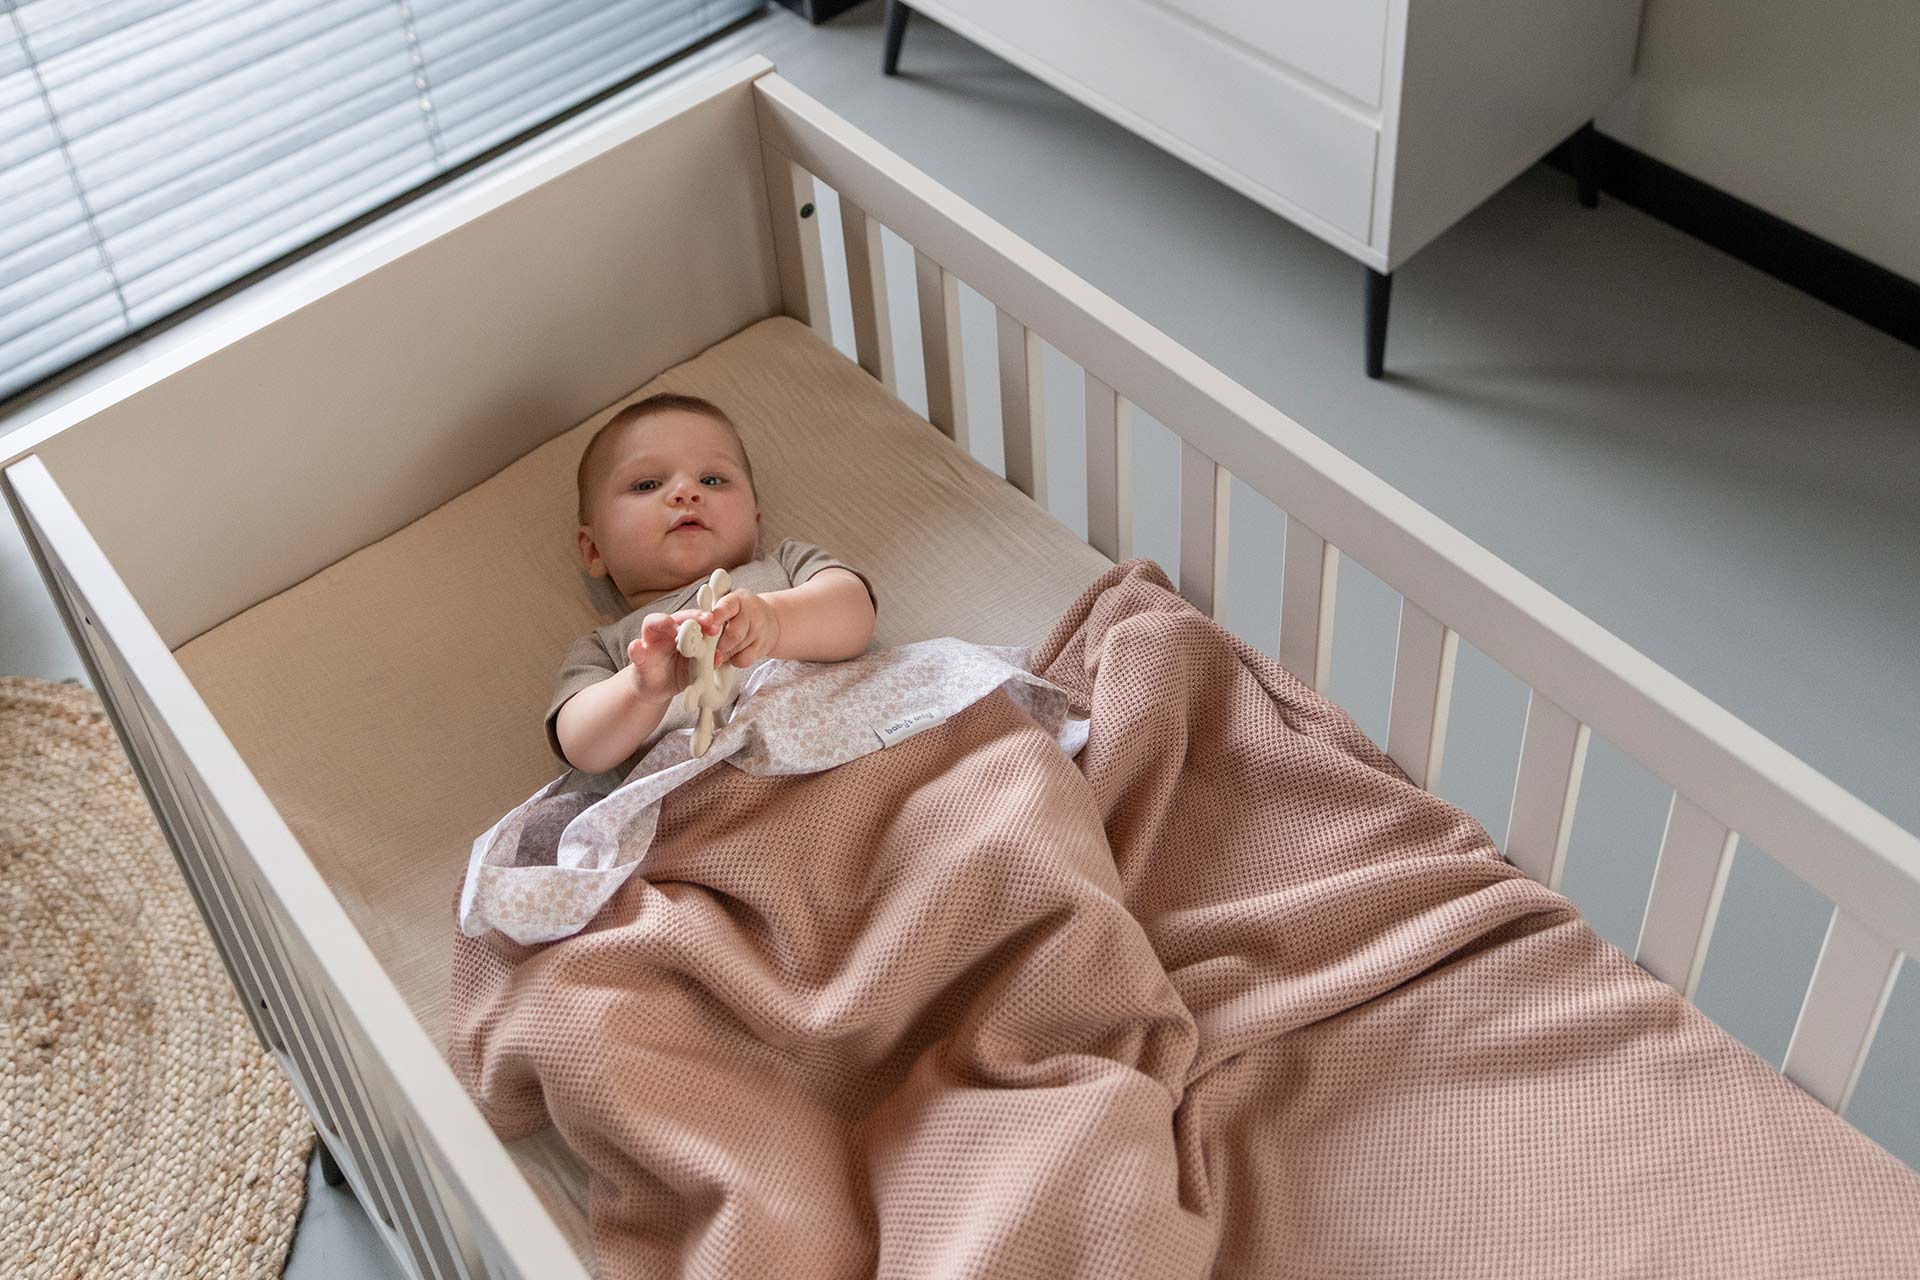 Le lit à Barreaux - Ma Baby Checklist